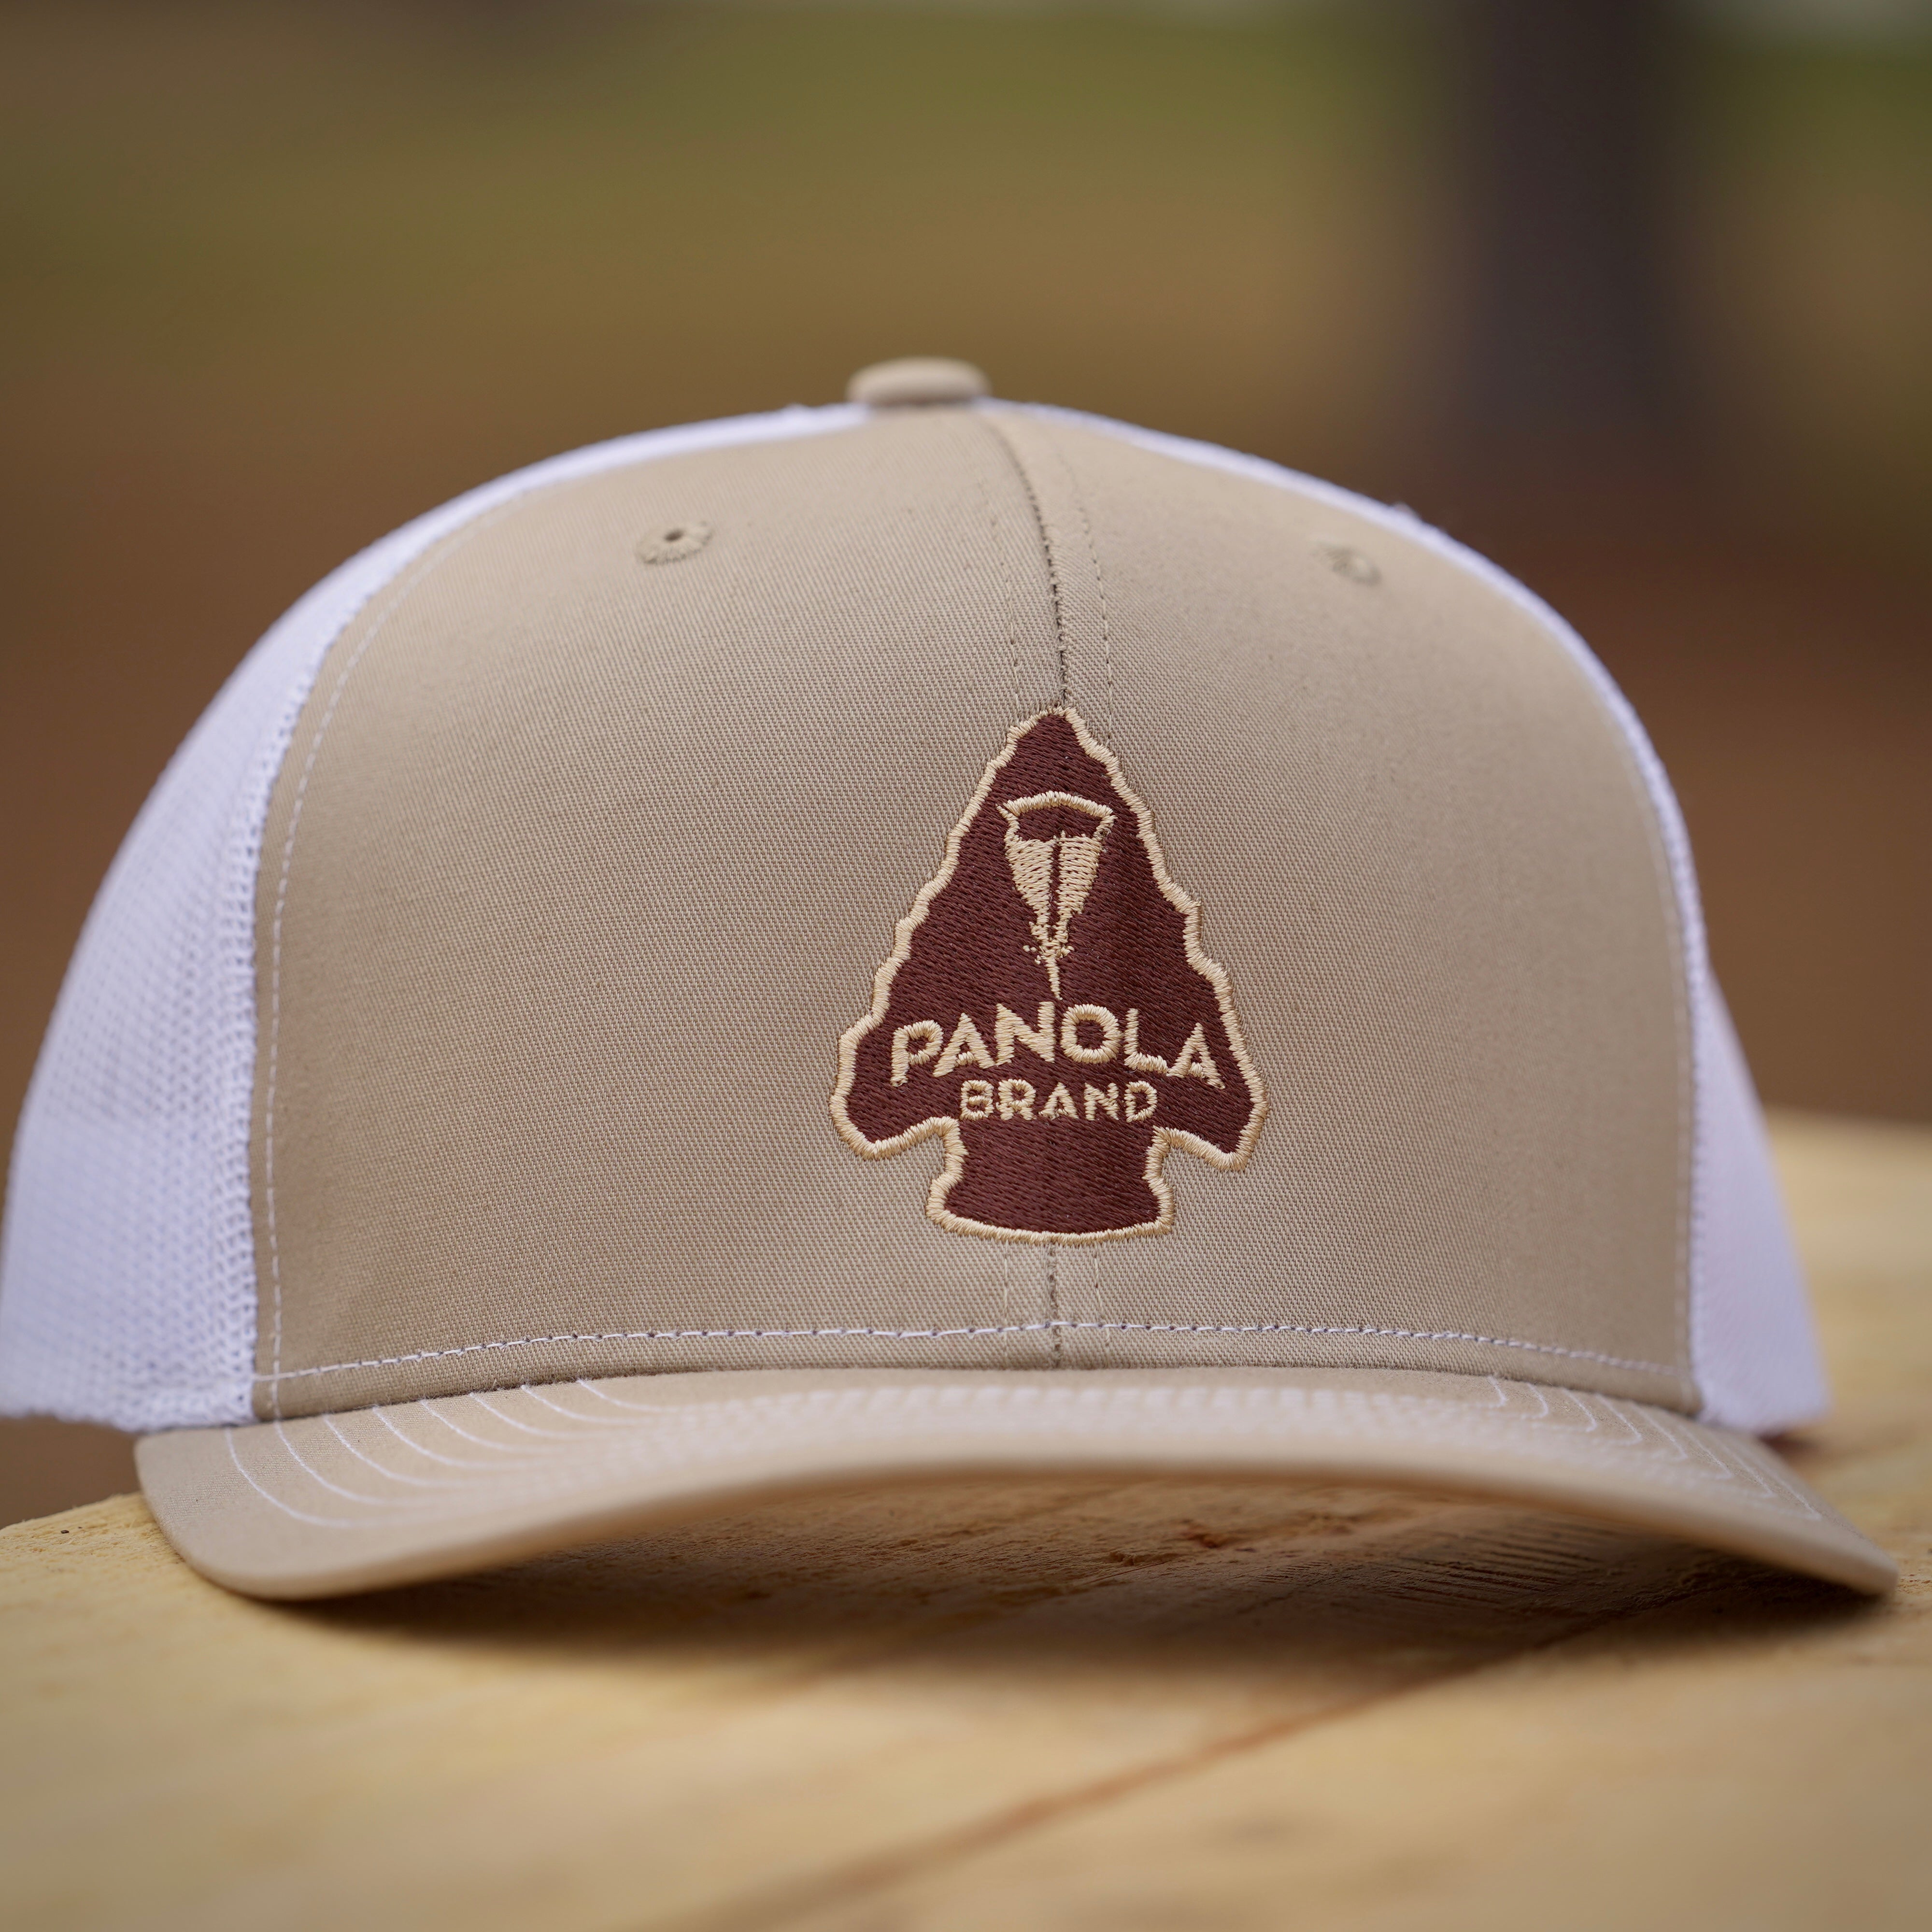 Arrowhead Trucker Hat